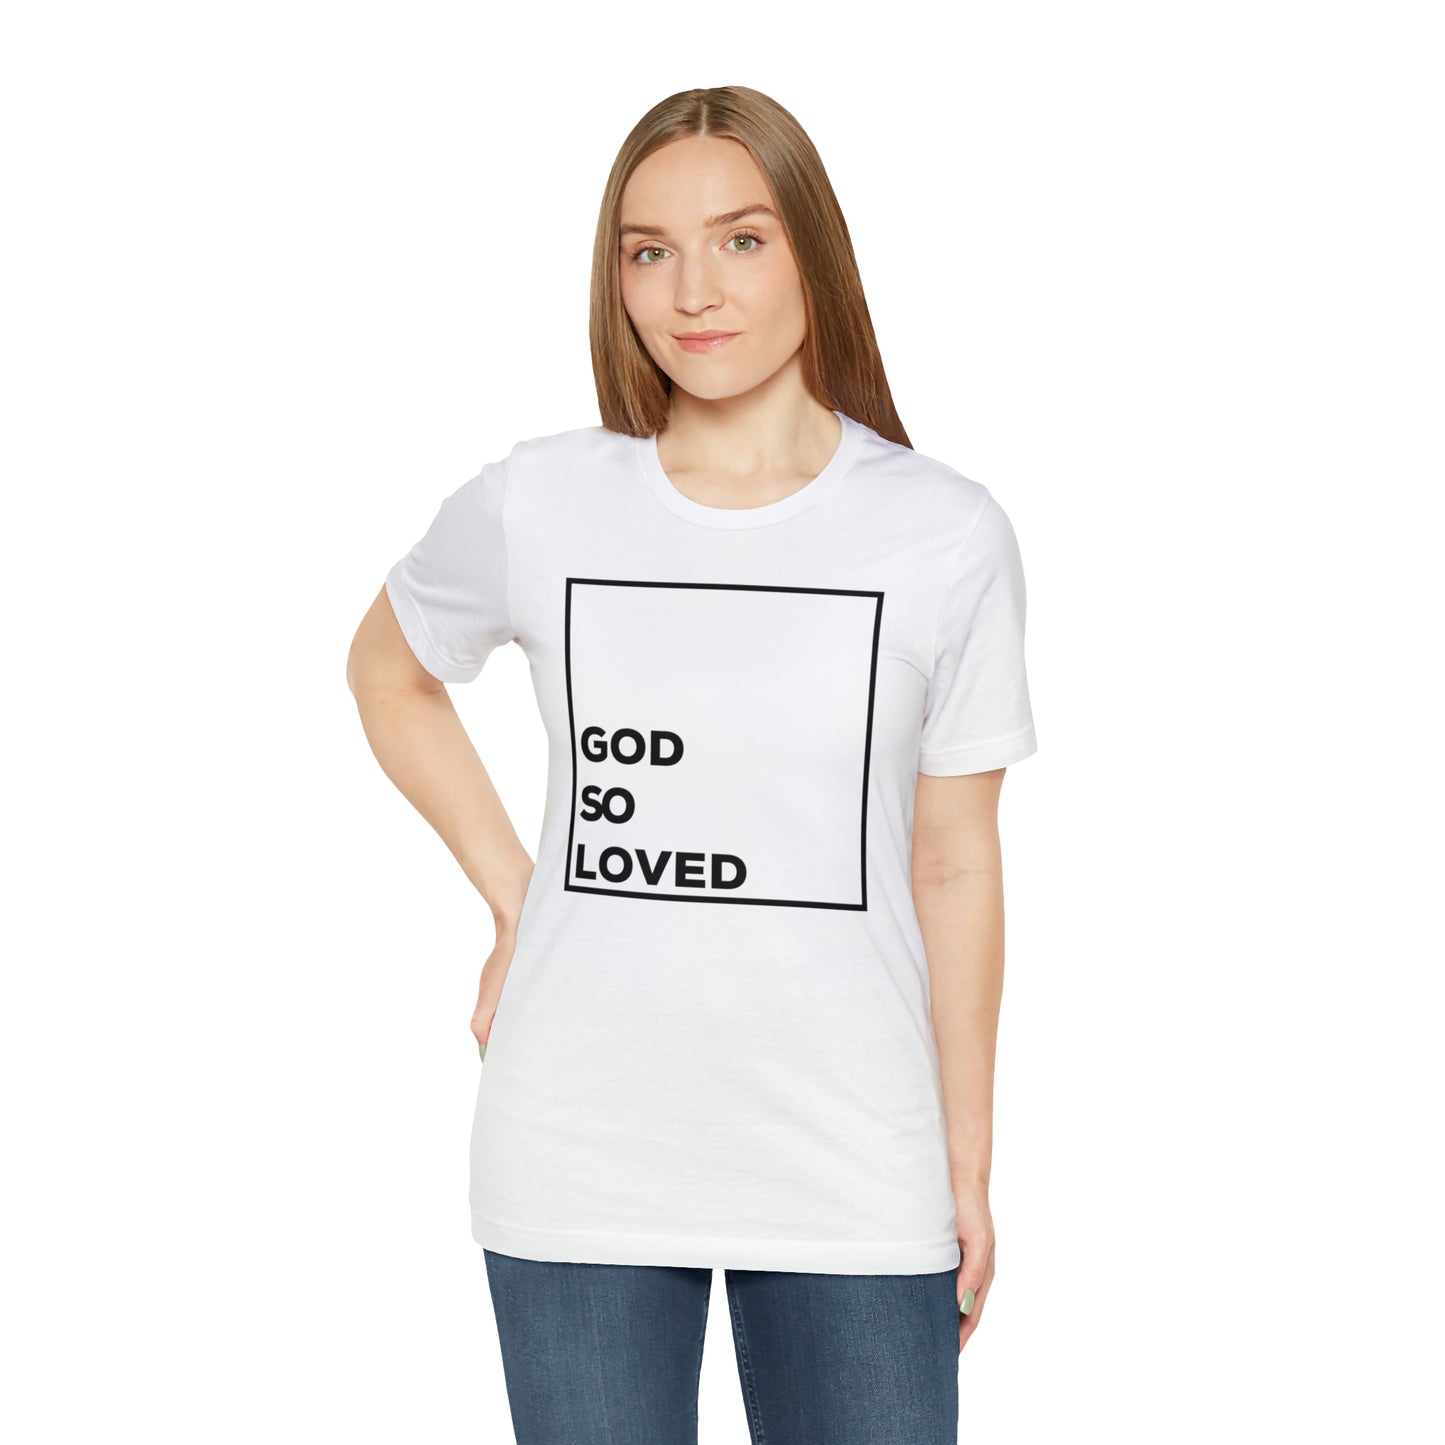 GOD SO LOVED-White-Unisex Jersey Short Sleeve Tee